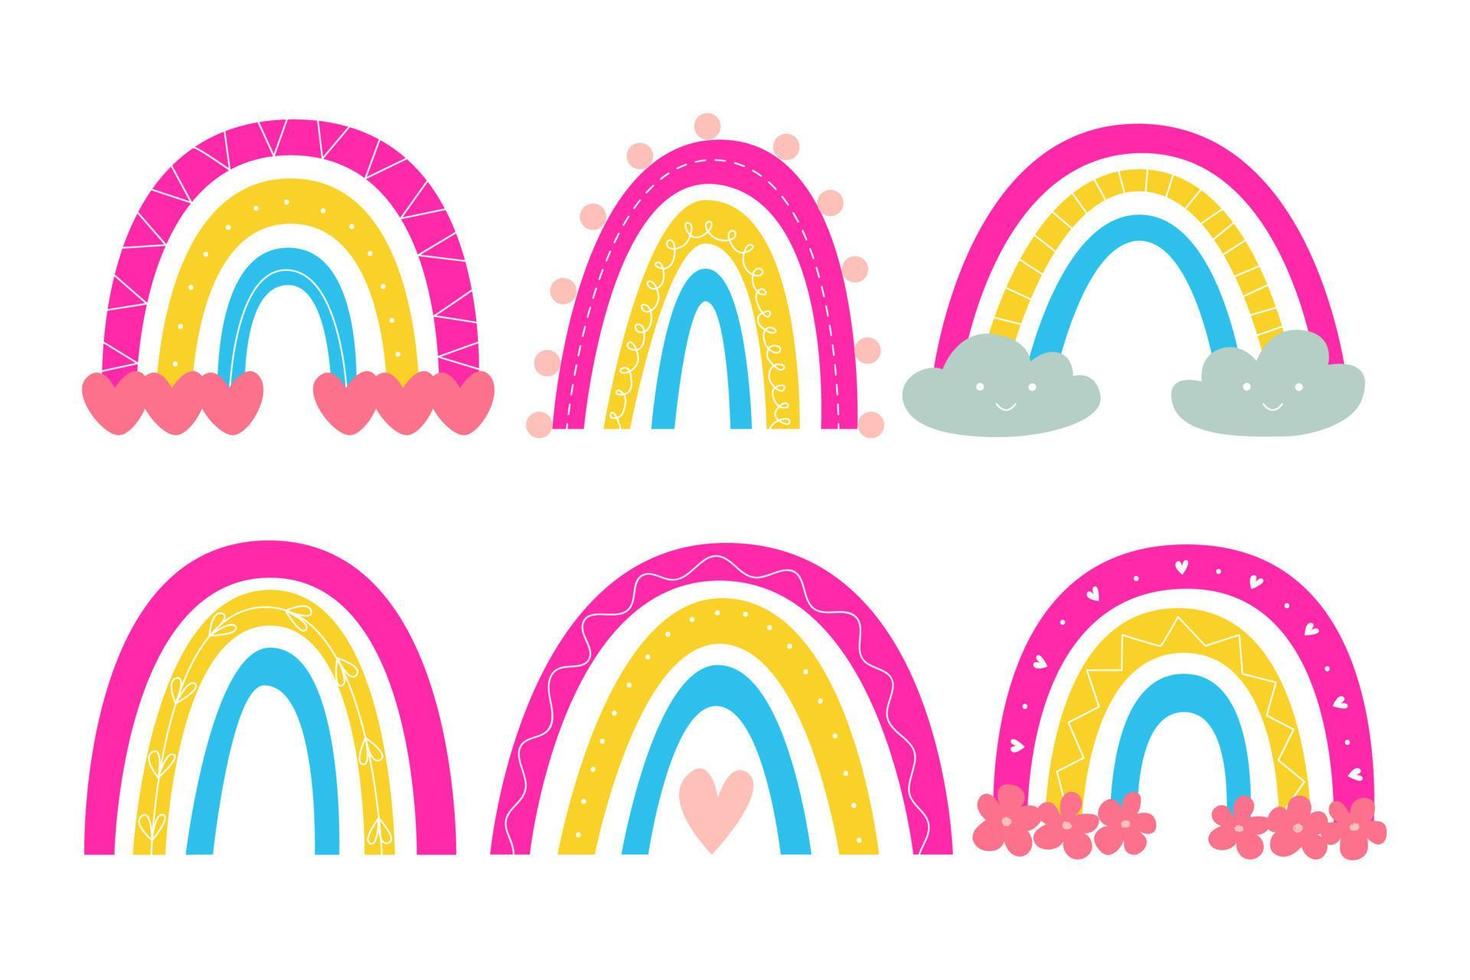 definir bonito arco-íris escandinavo em cores bandeira pansexual. adesivos para o orgulho lgbtq. ilustração vetorial em estilo ingênuo de desenho animado. vetor